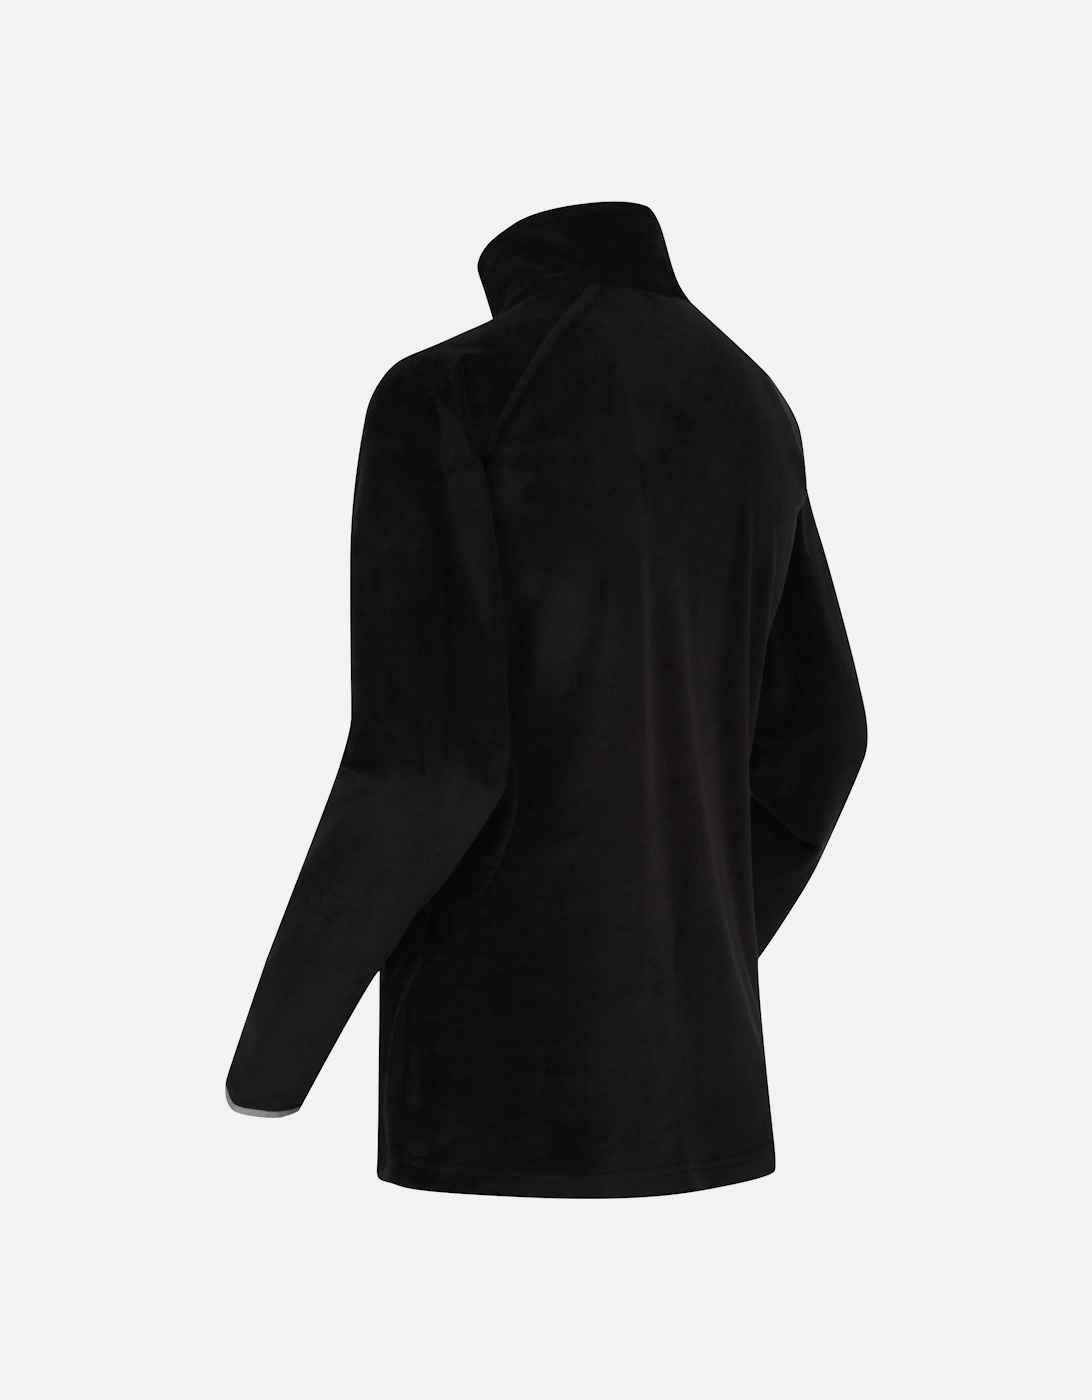 Womens/Ladies Lavene Half Zip Fleece Top